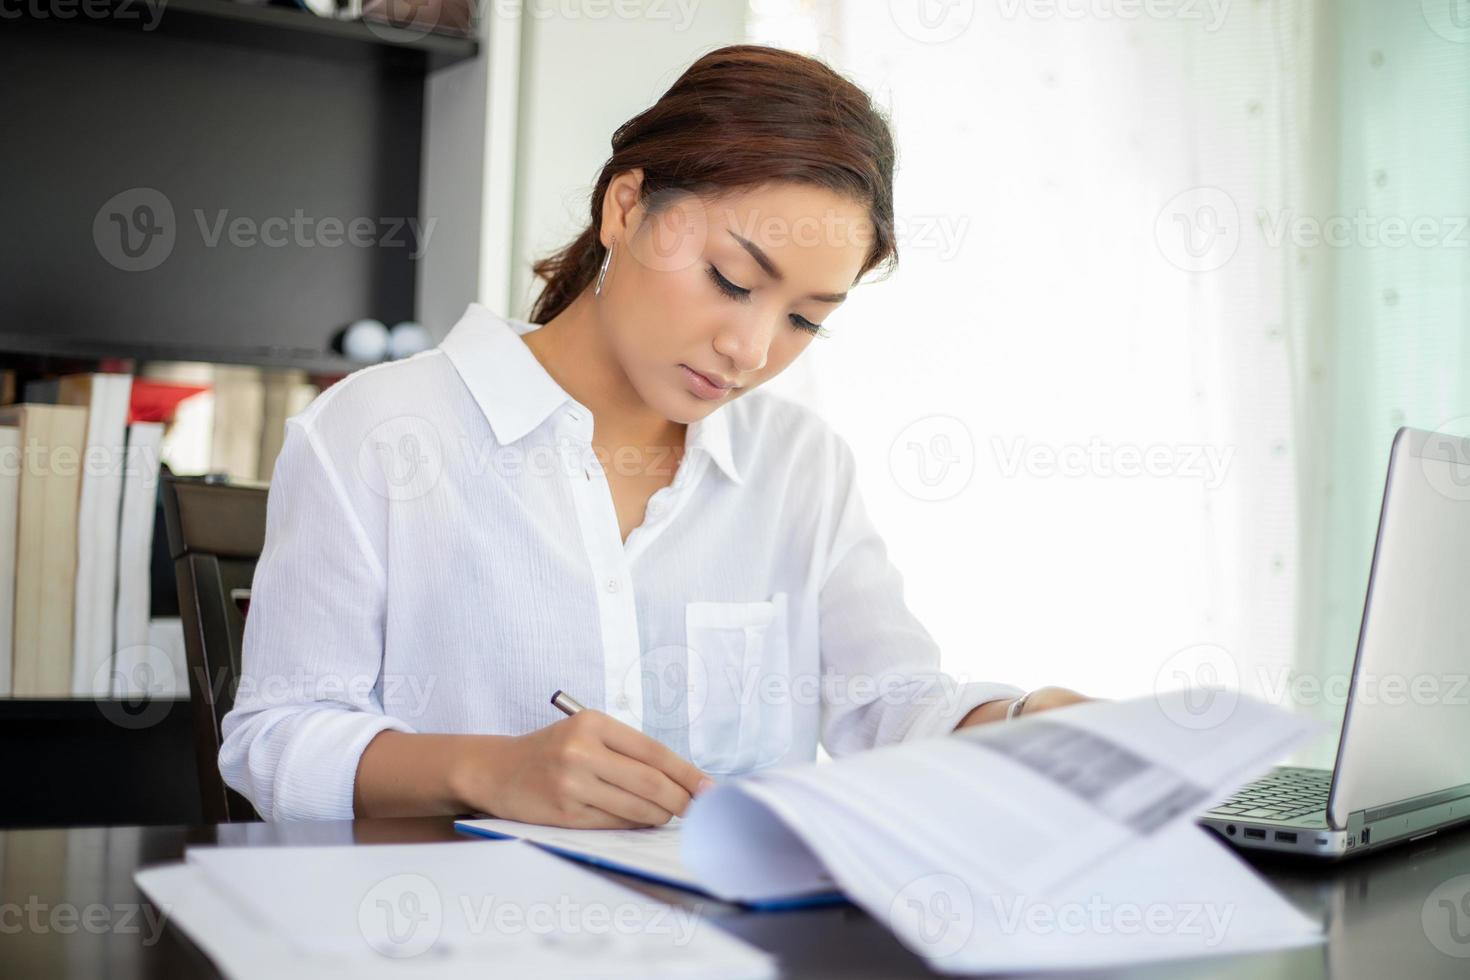 mooie Aziatische zakenvrouwen die documenten controleren en een notitieboekje gebruiken om thuis te werken foto